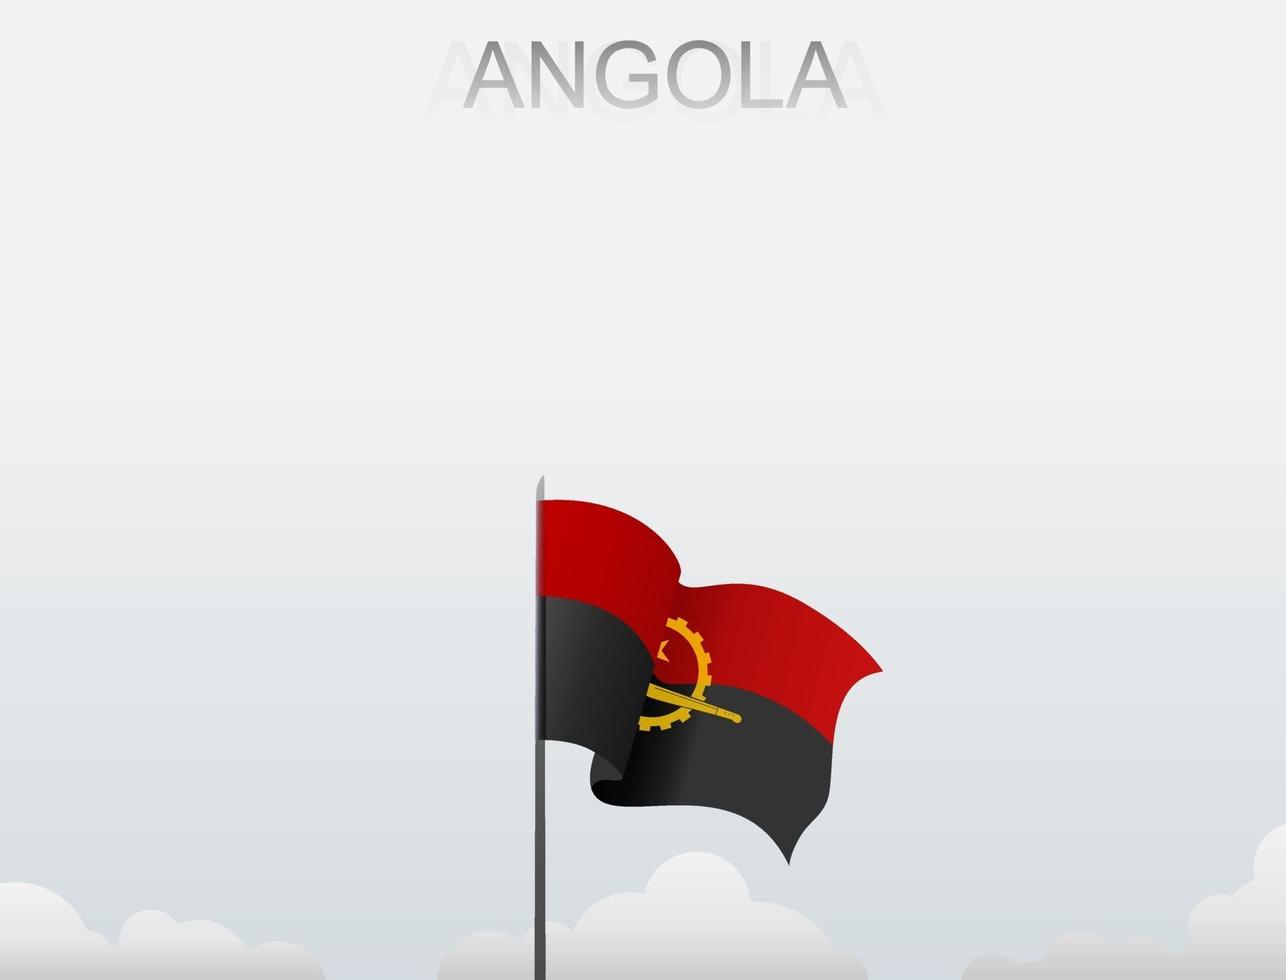 die angola-flagge weht an einer stange, die hoch unter dem weißen himmel steht vektor